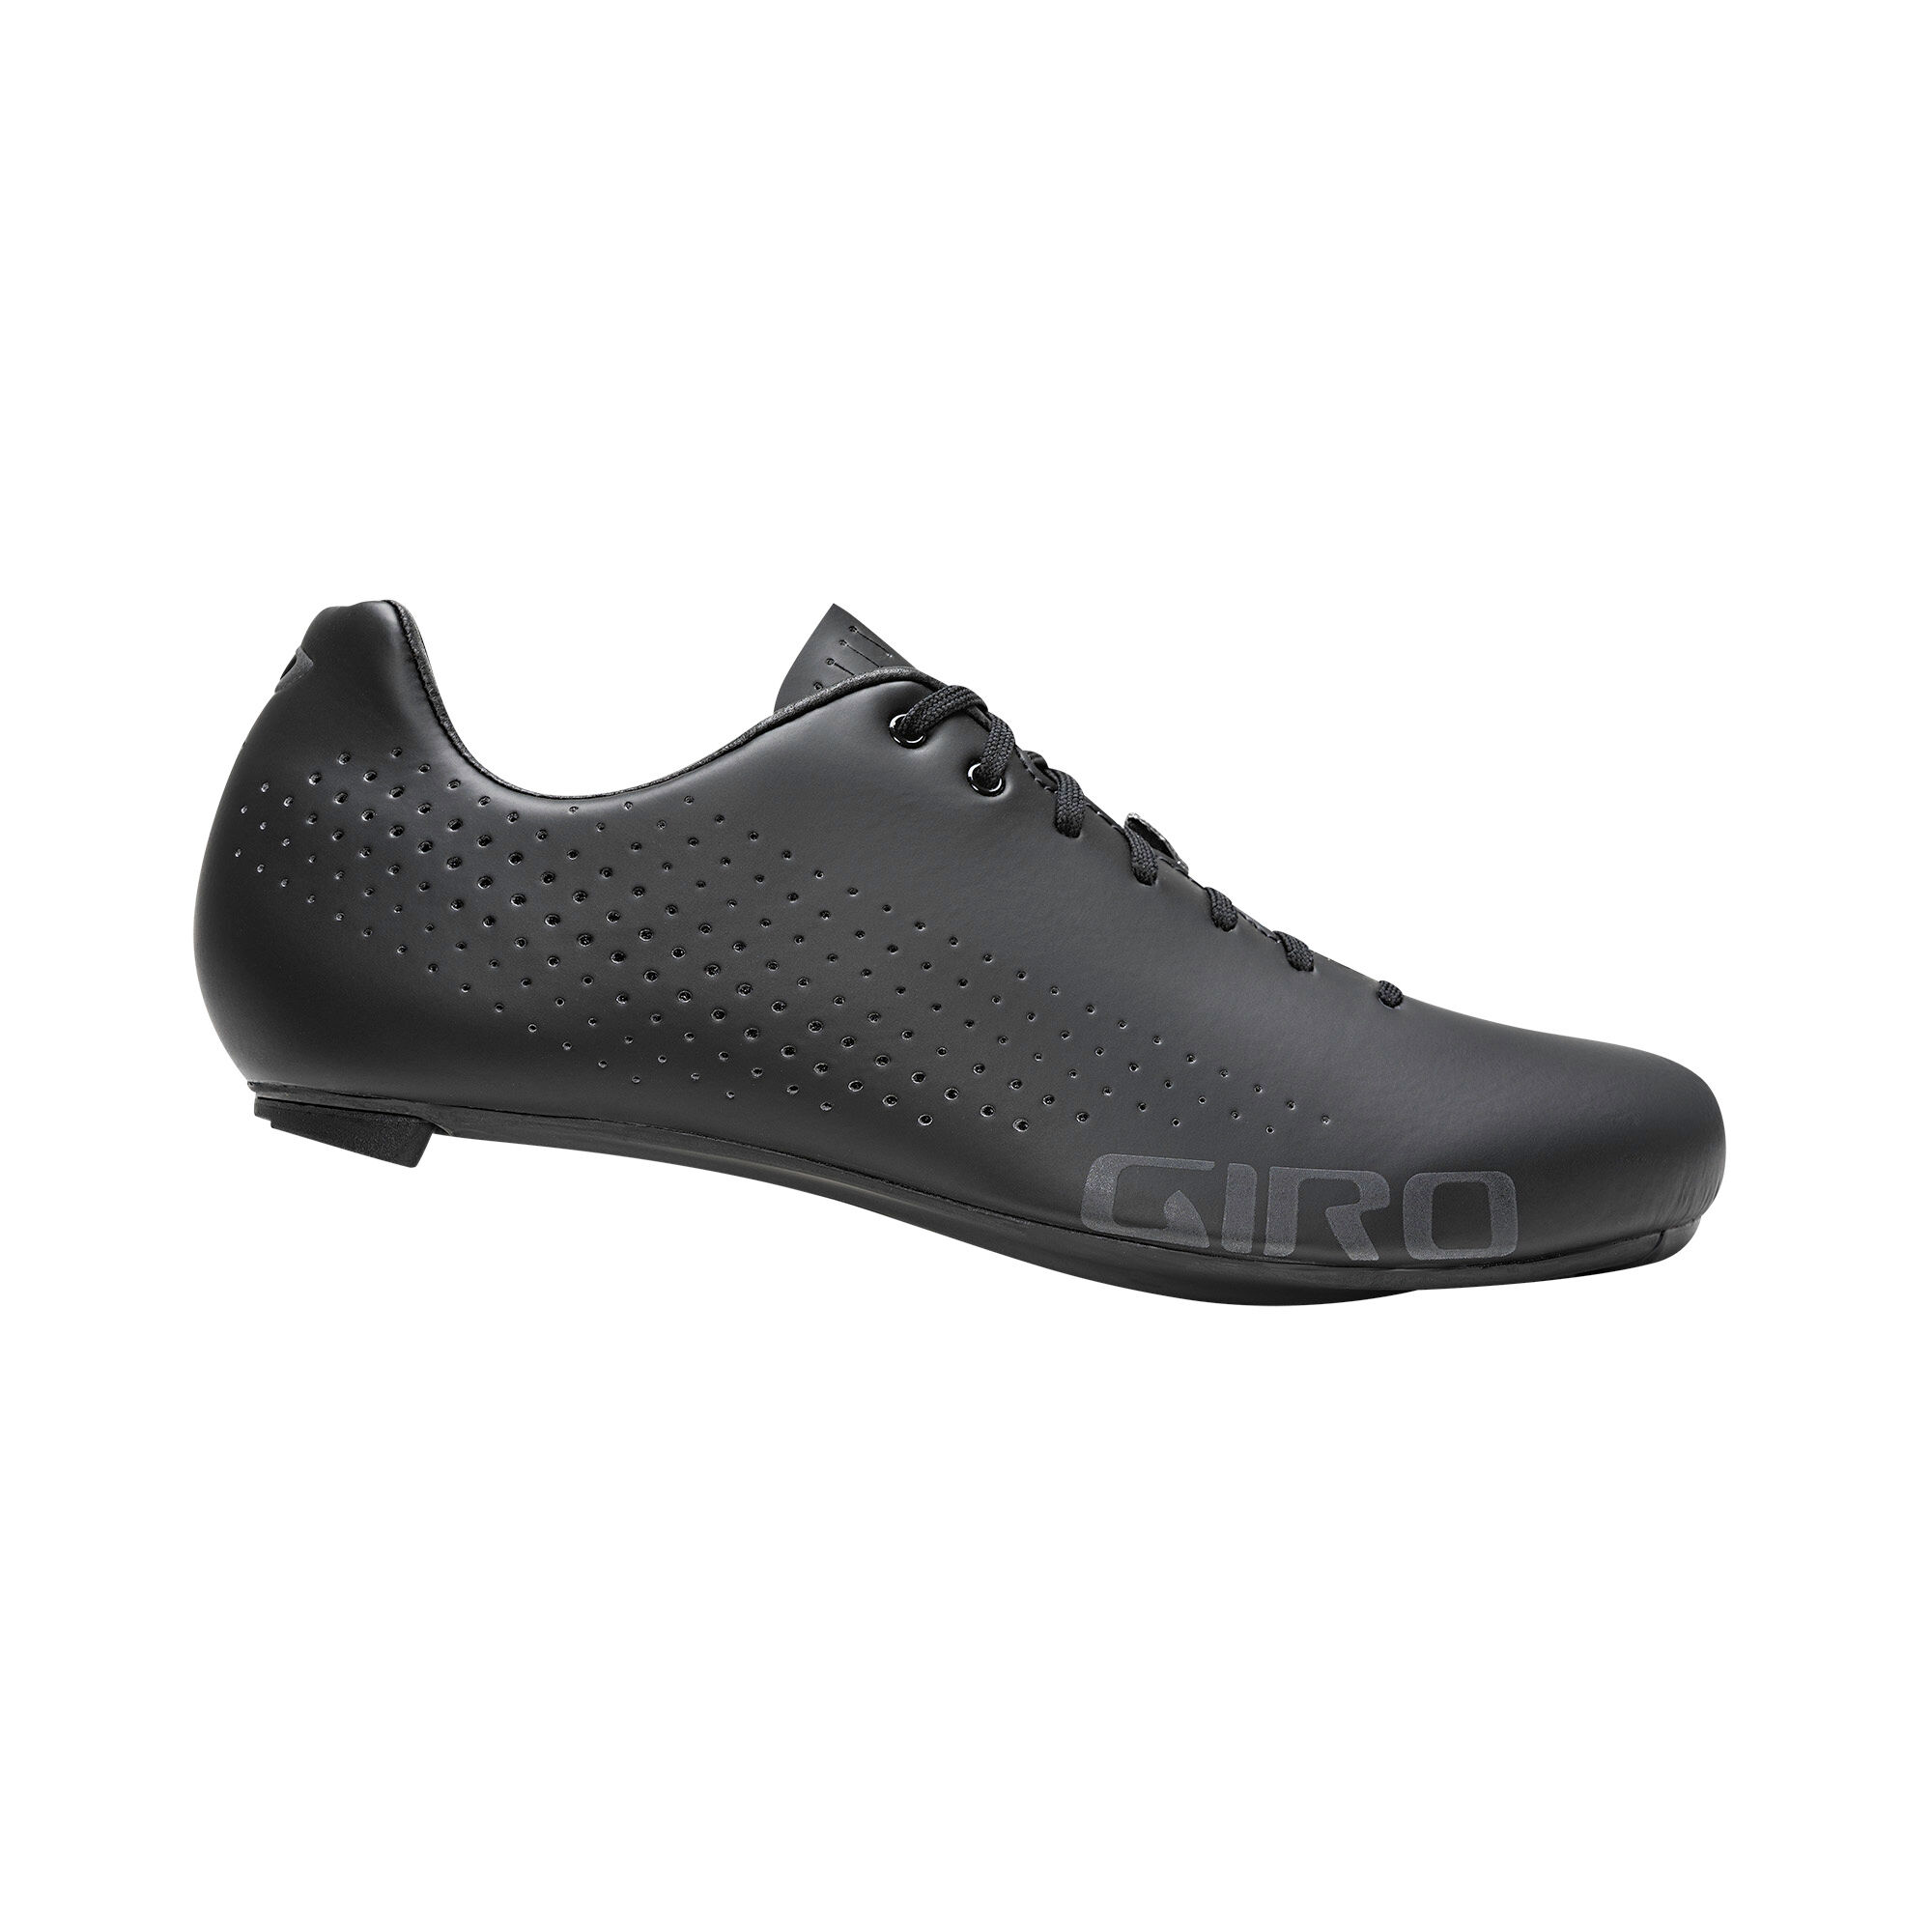 Giro Empire - Zapatillas de ciclismo - Hombre